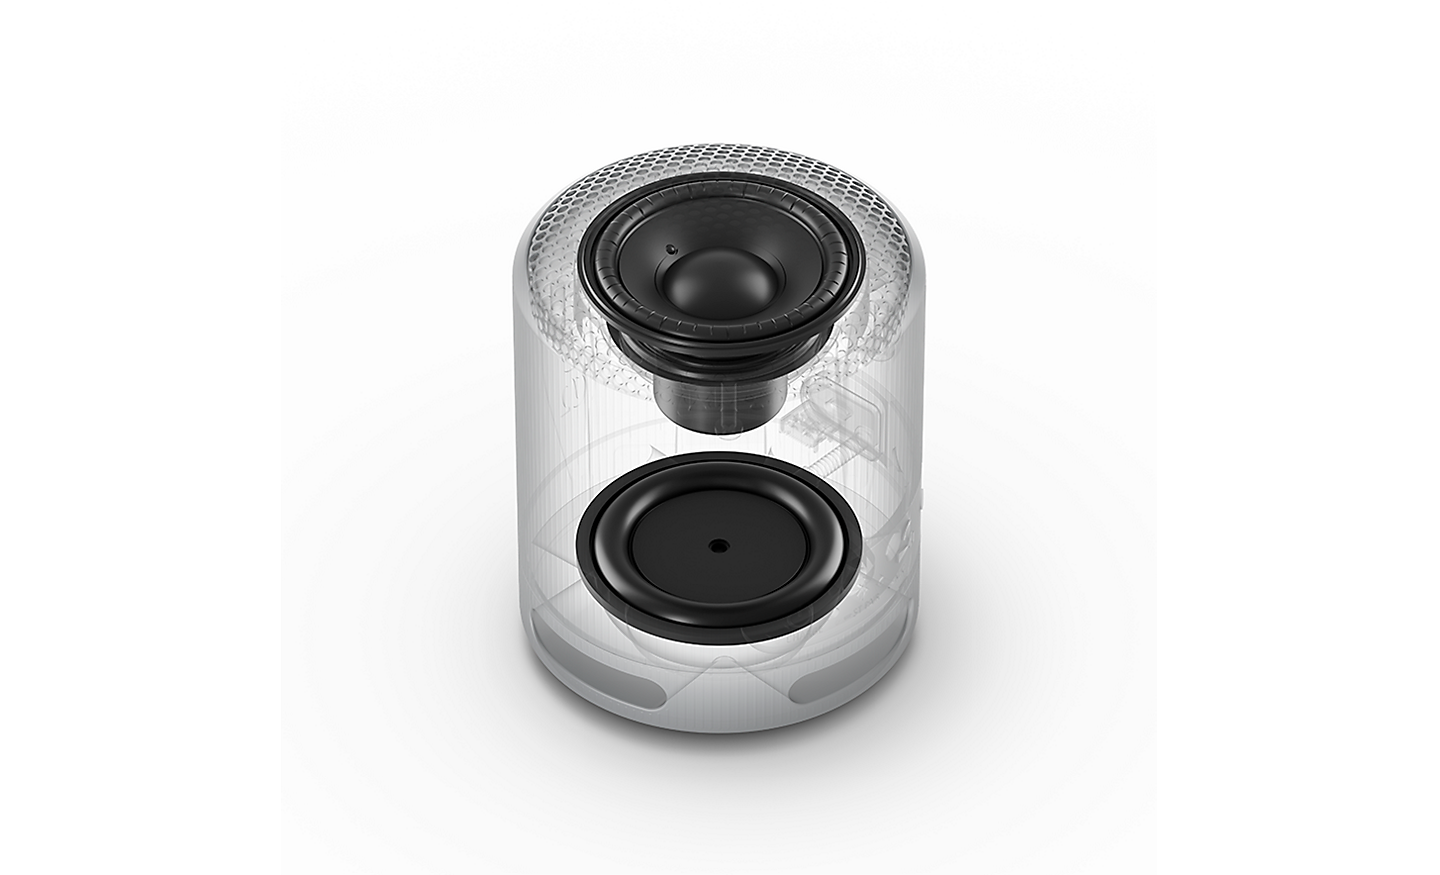 Image of the passive radiator and full-range speaker from the inside of the SRS-XB100 wireless speaker